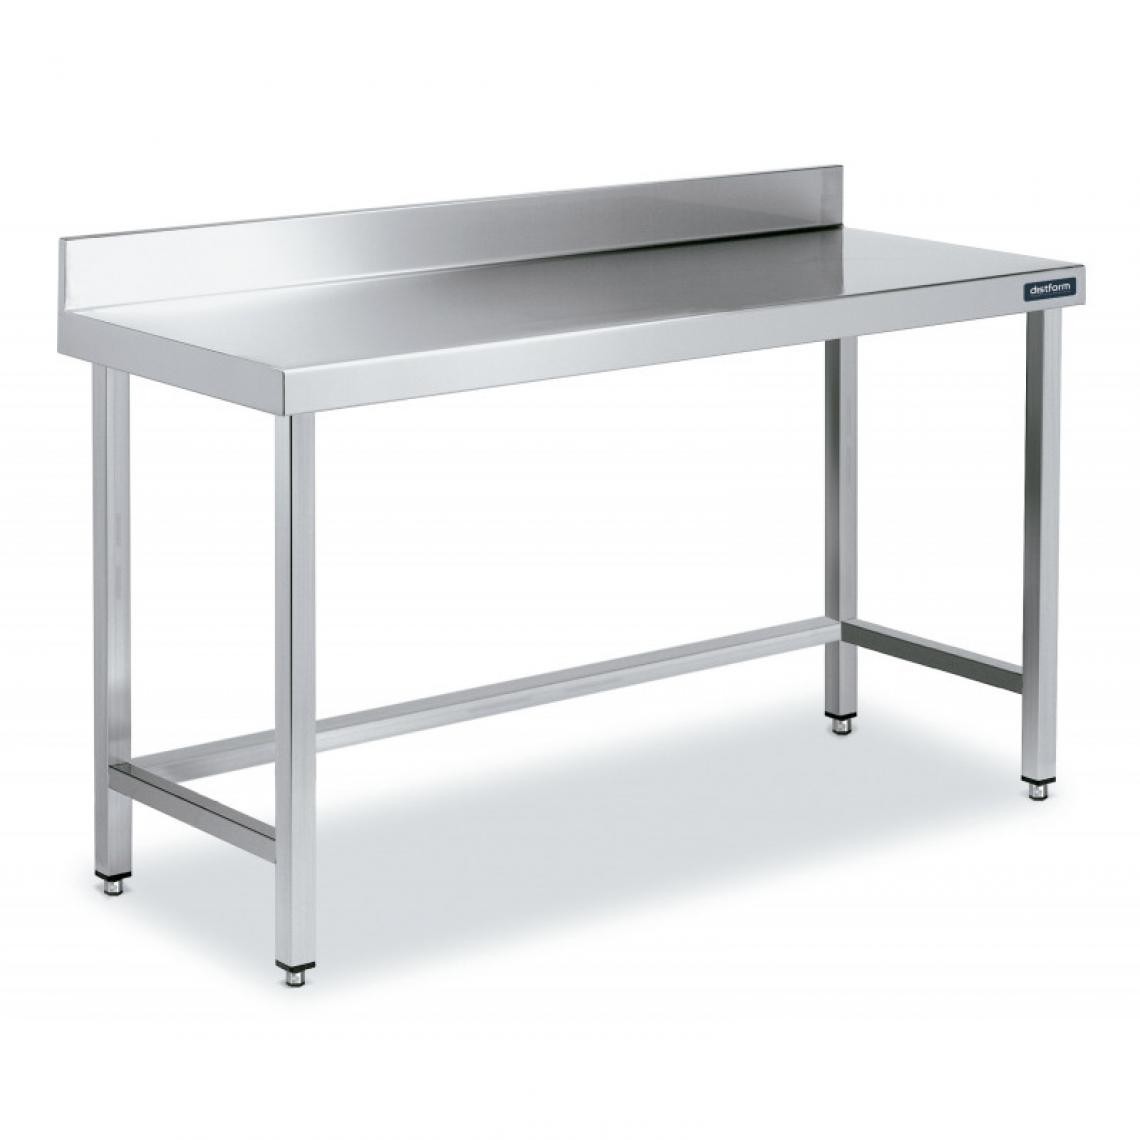 DISTFORM - Table Inox de Travail avec Dosseret Gamme 900 - Distform - Acier inoxydable2800x900 - Tables à manger